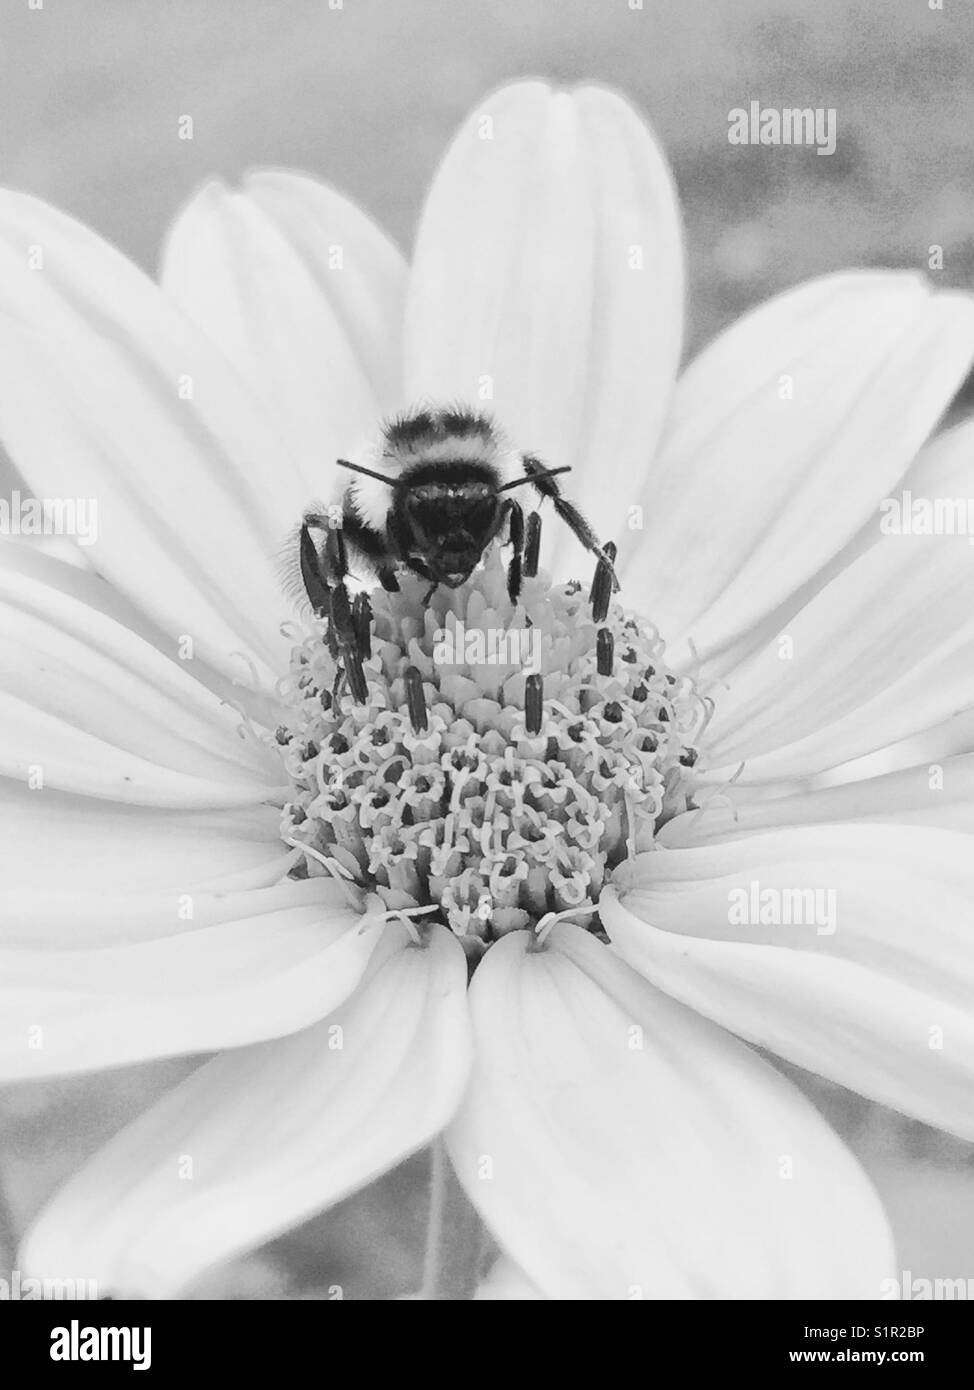 Les abeilles pollinisent cosmos fleur. Tourné en noir n blanc. Banque D'Images